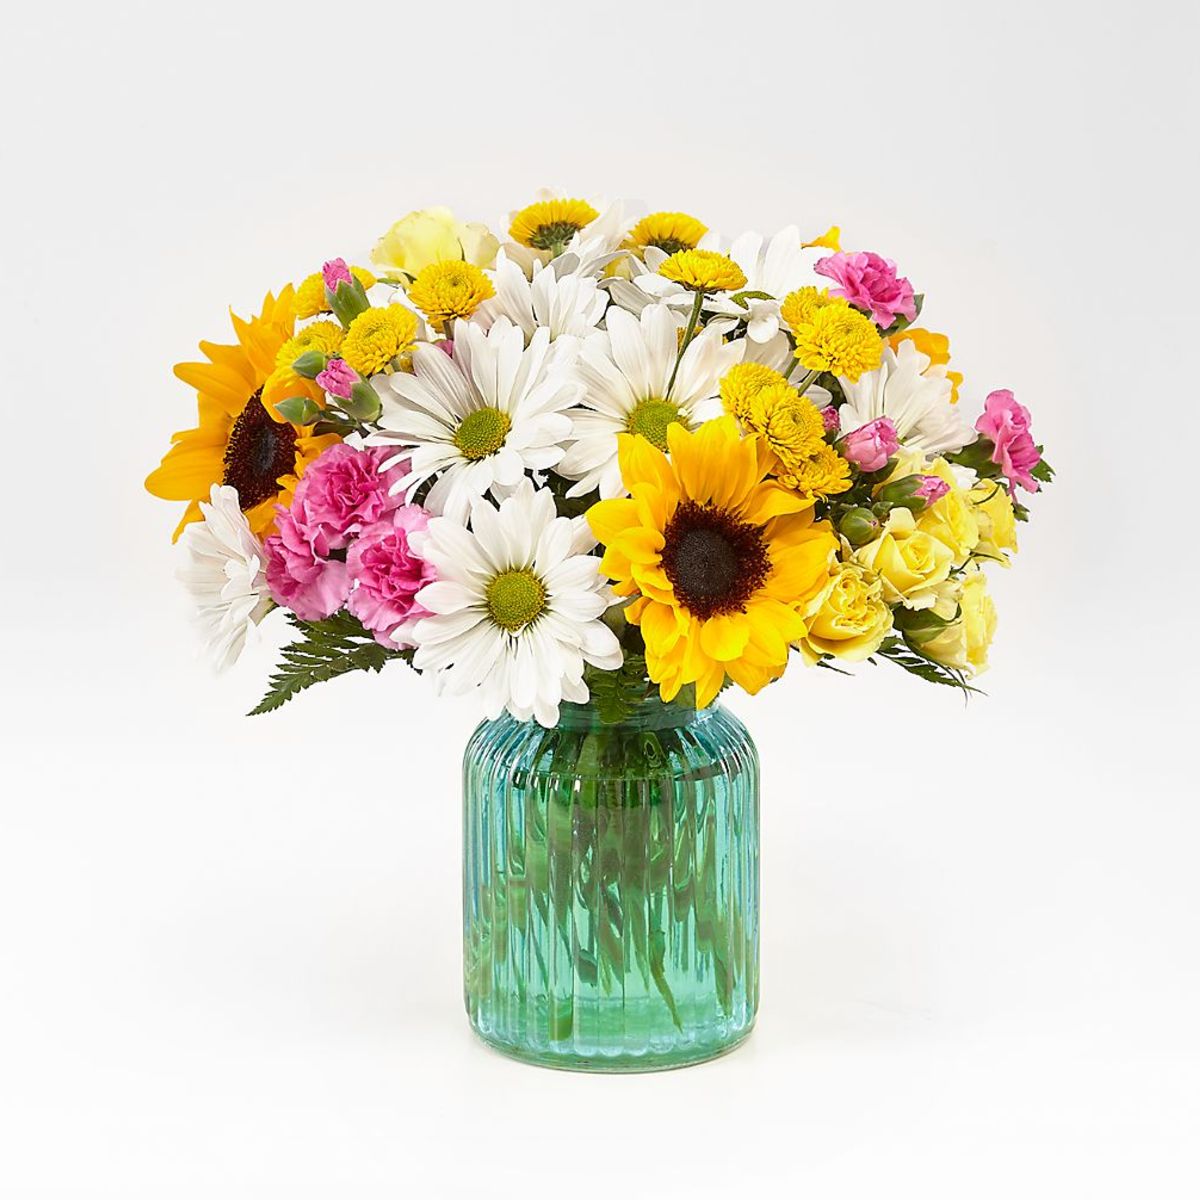 Sunlit Meadows™ Bouquet - Exquisite